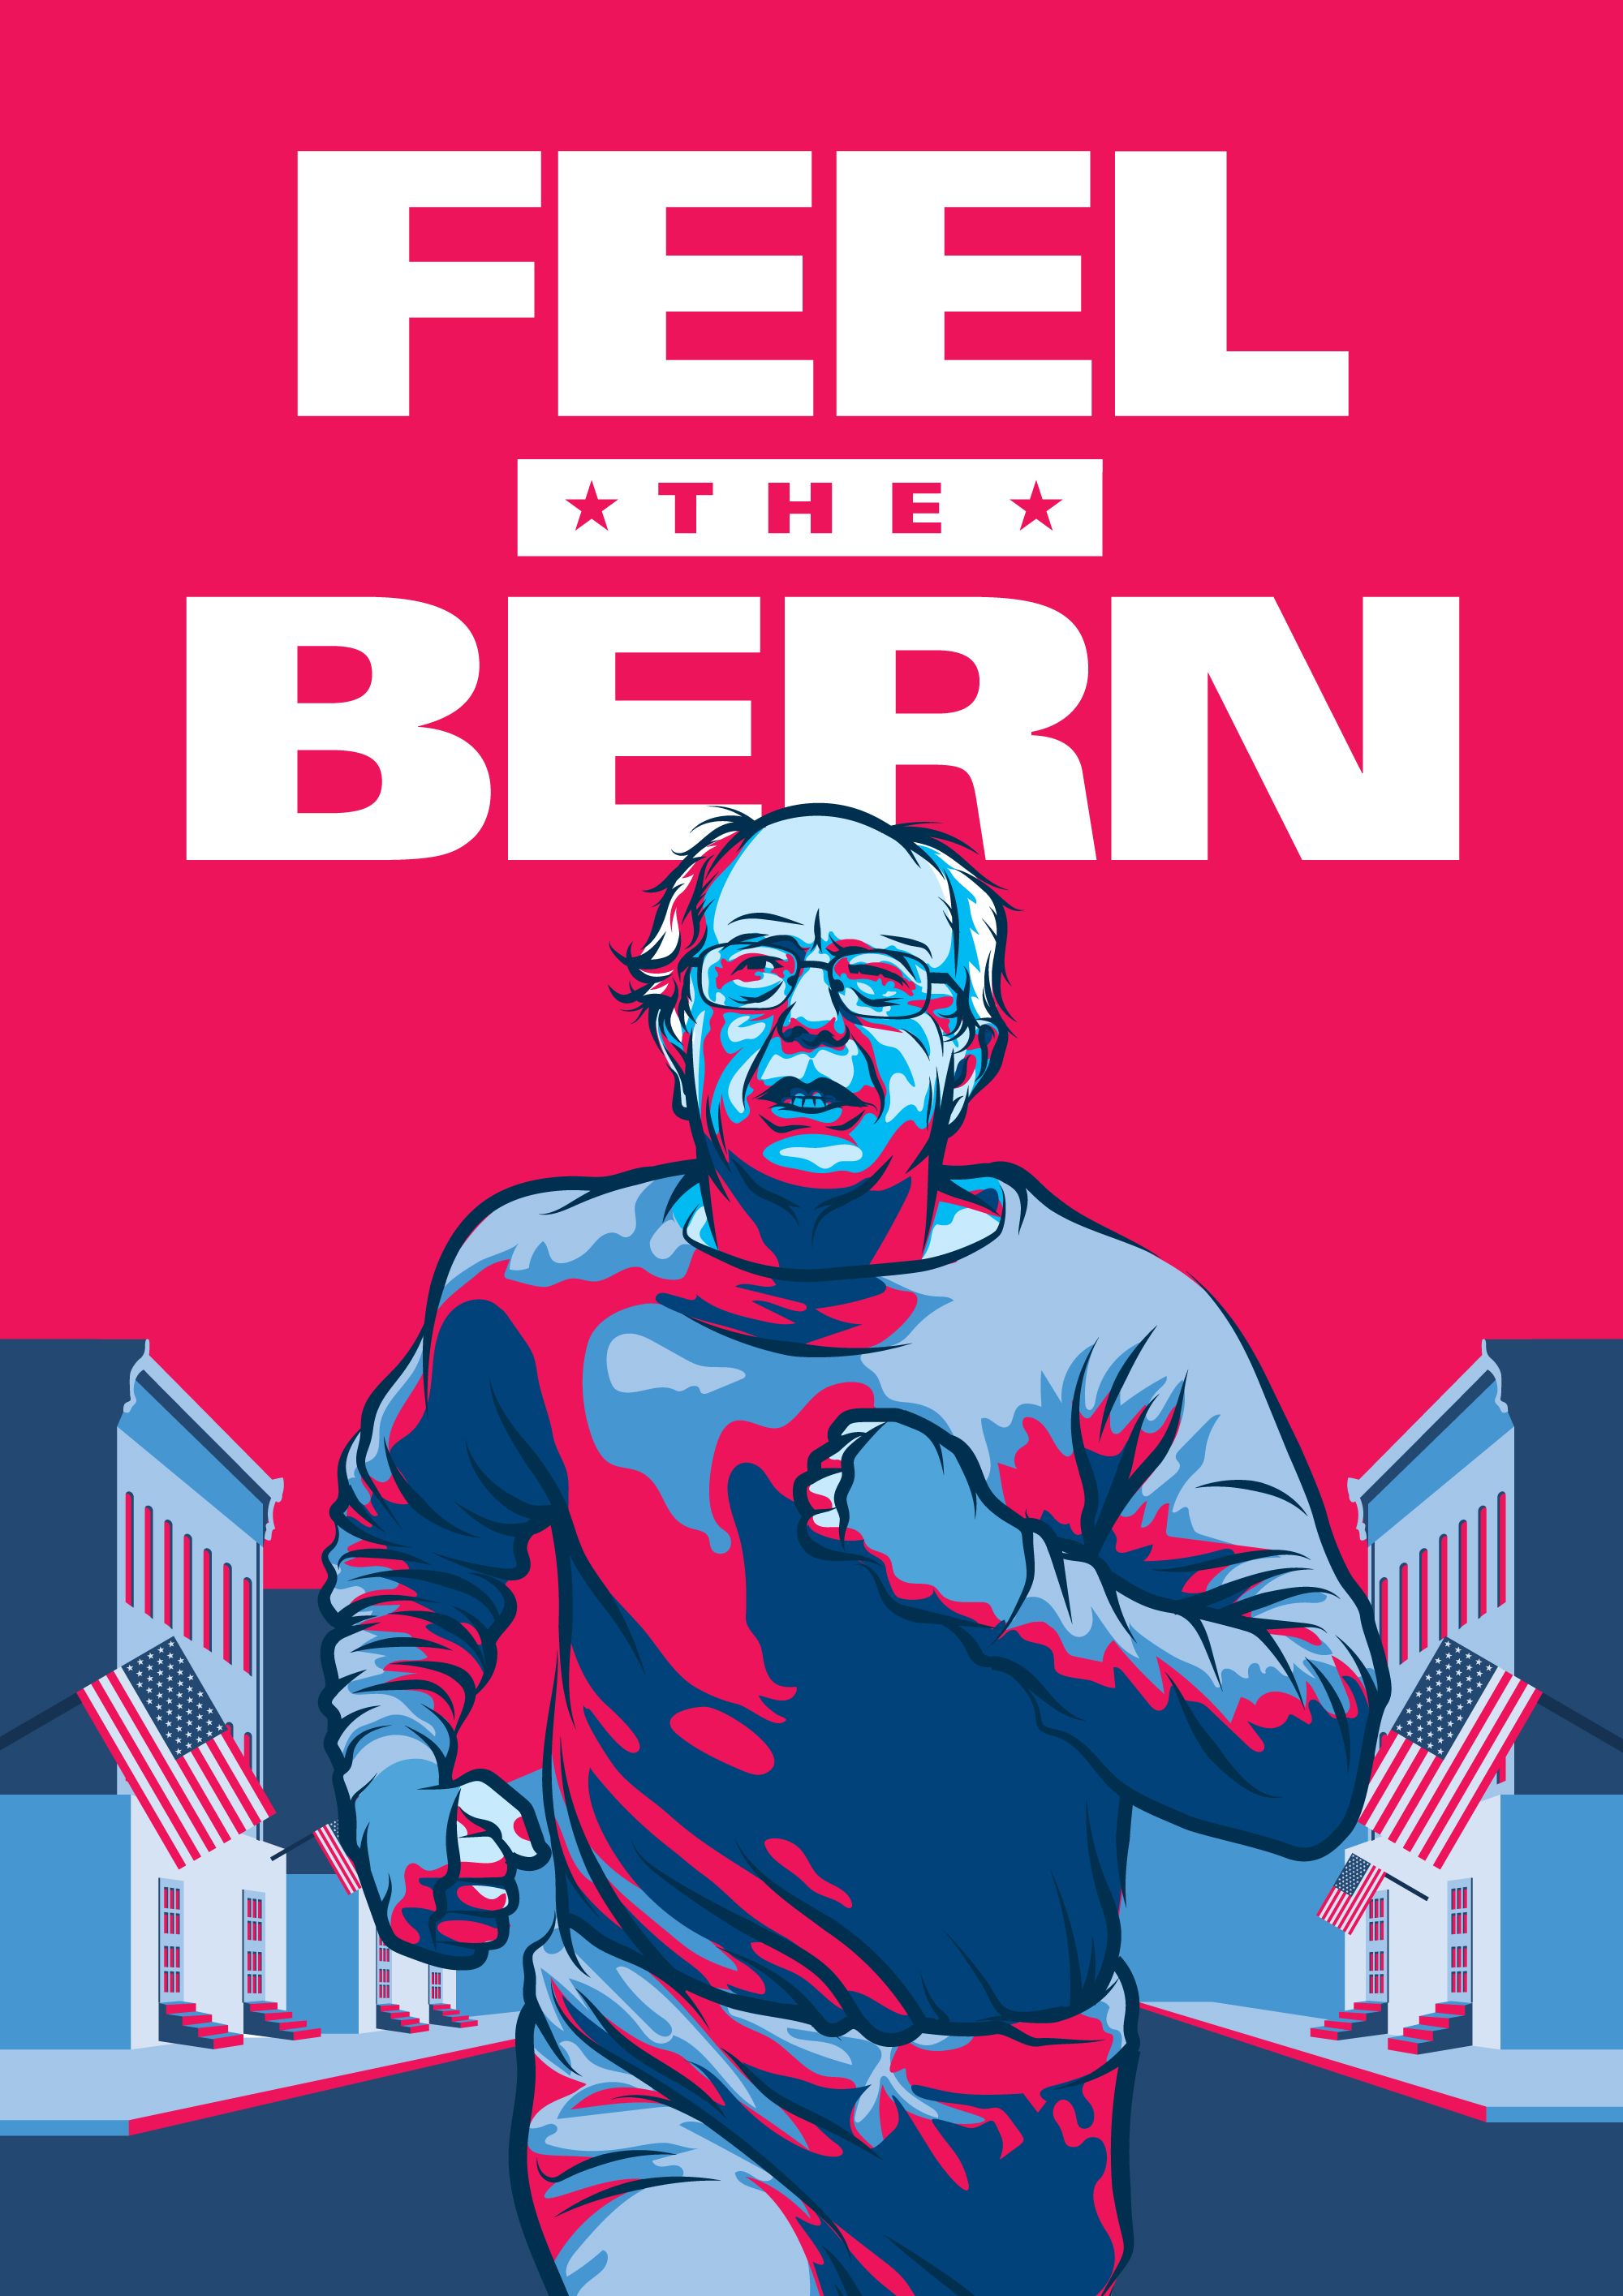 Bernie Sanders Wallpaper Free Bernie Sanders Background